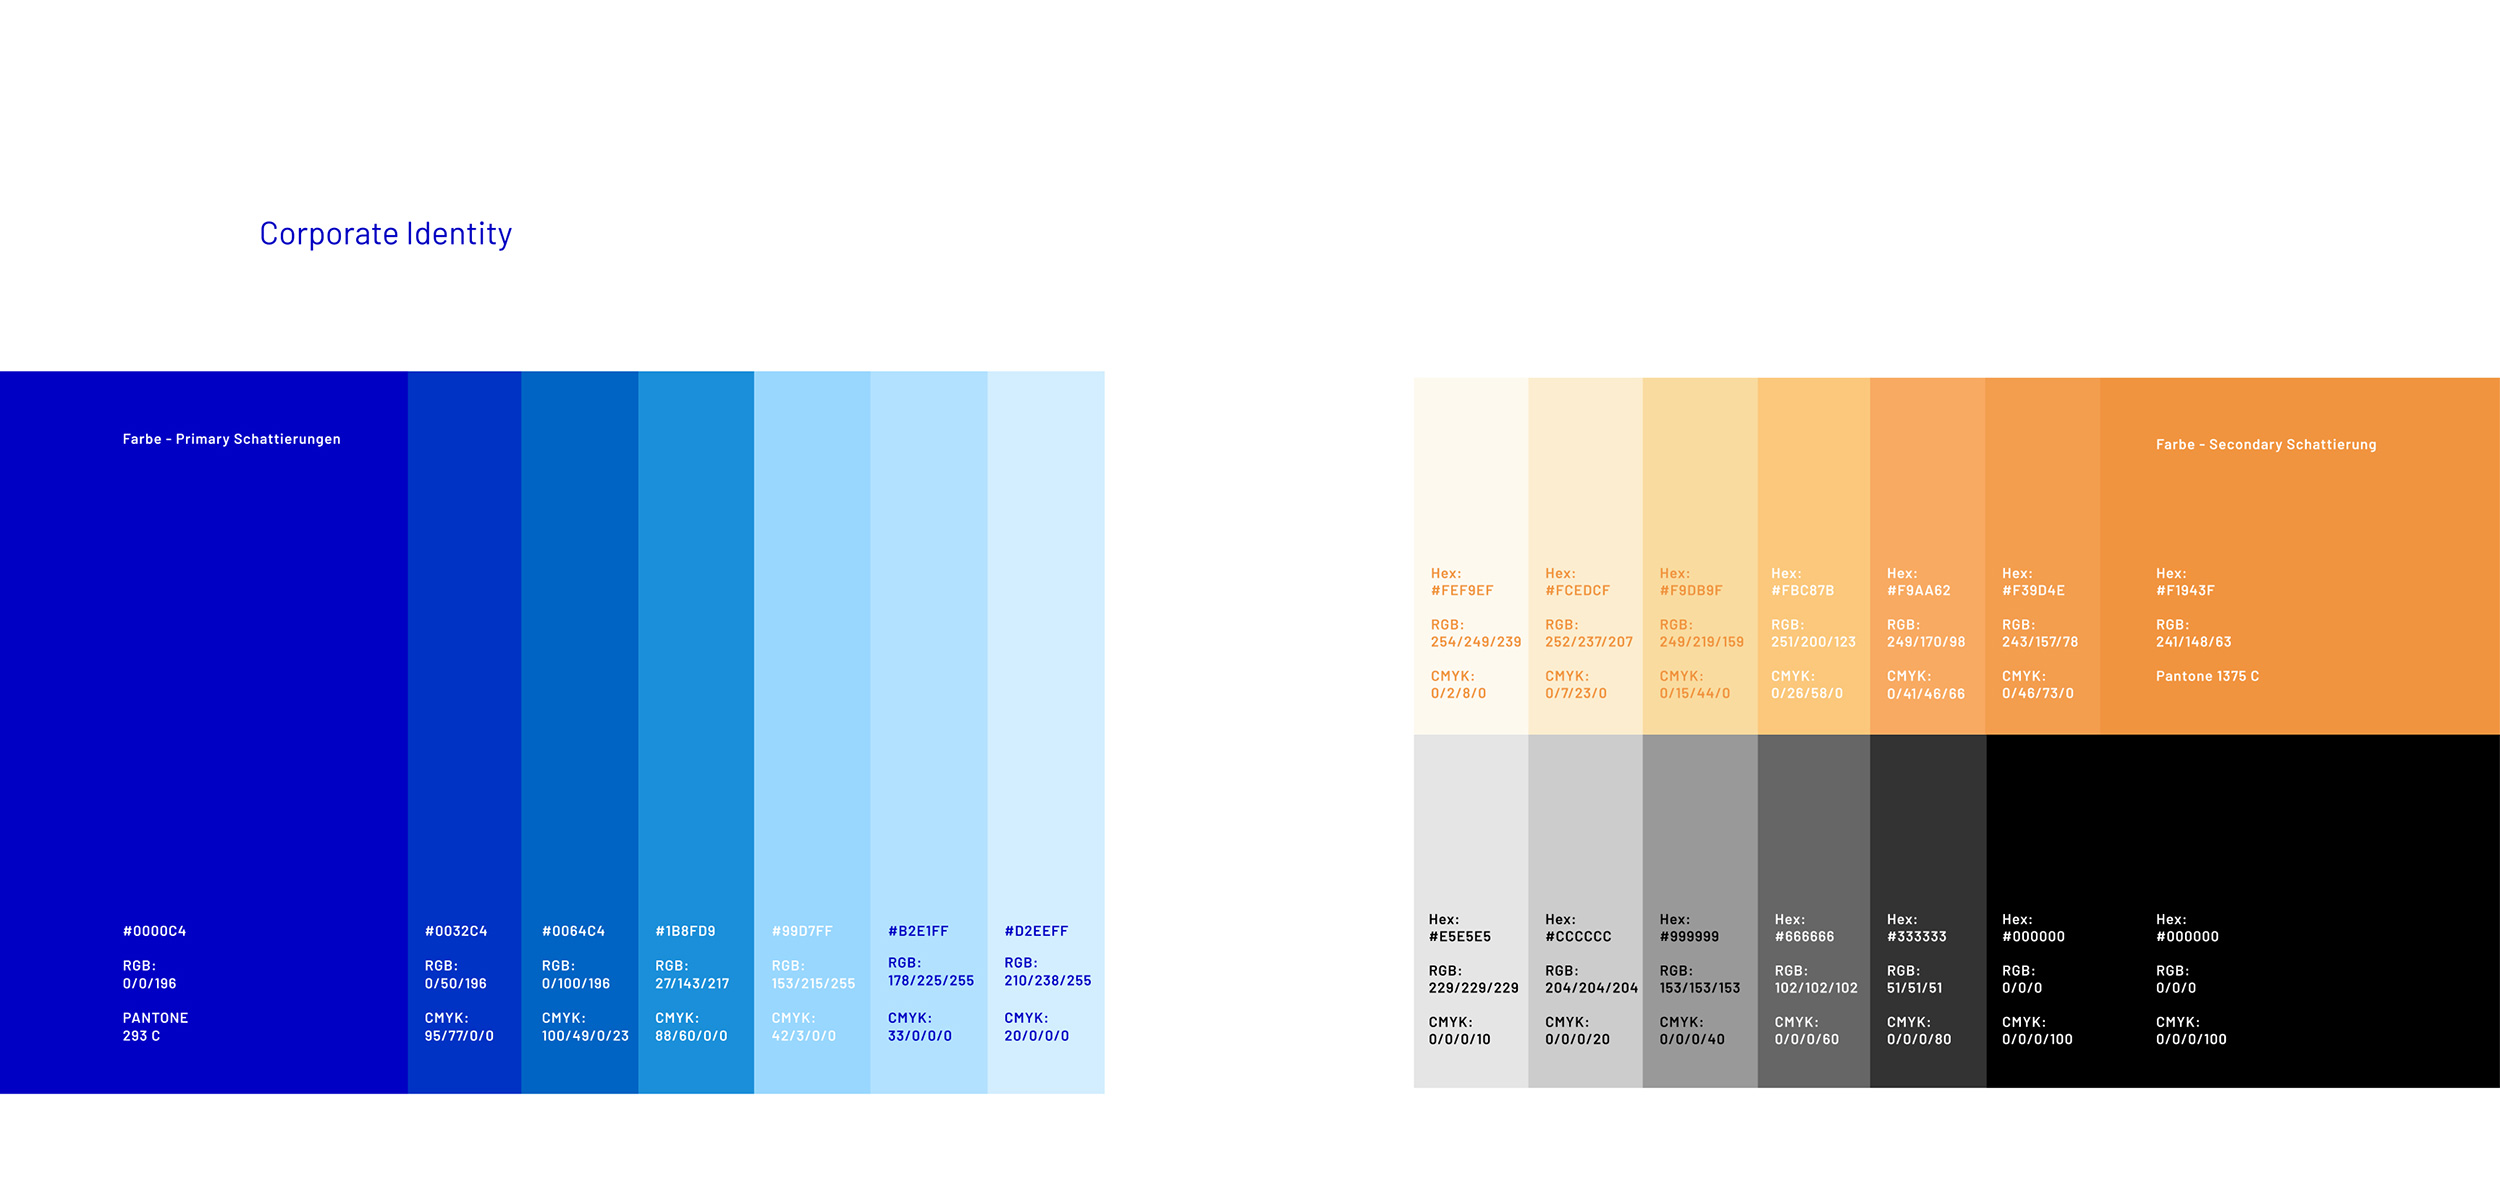 Blautöne, Orange und Schwarz als Farben der Corporate Identity